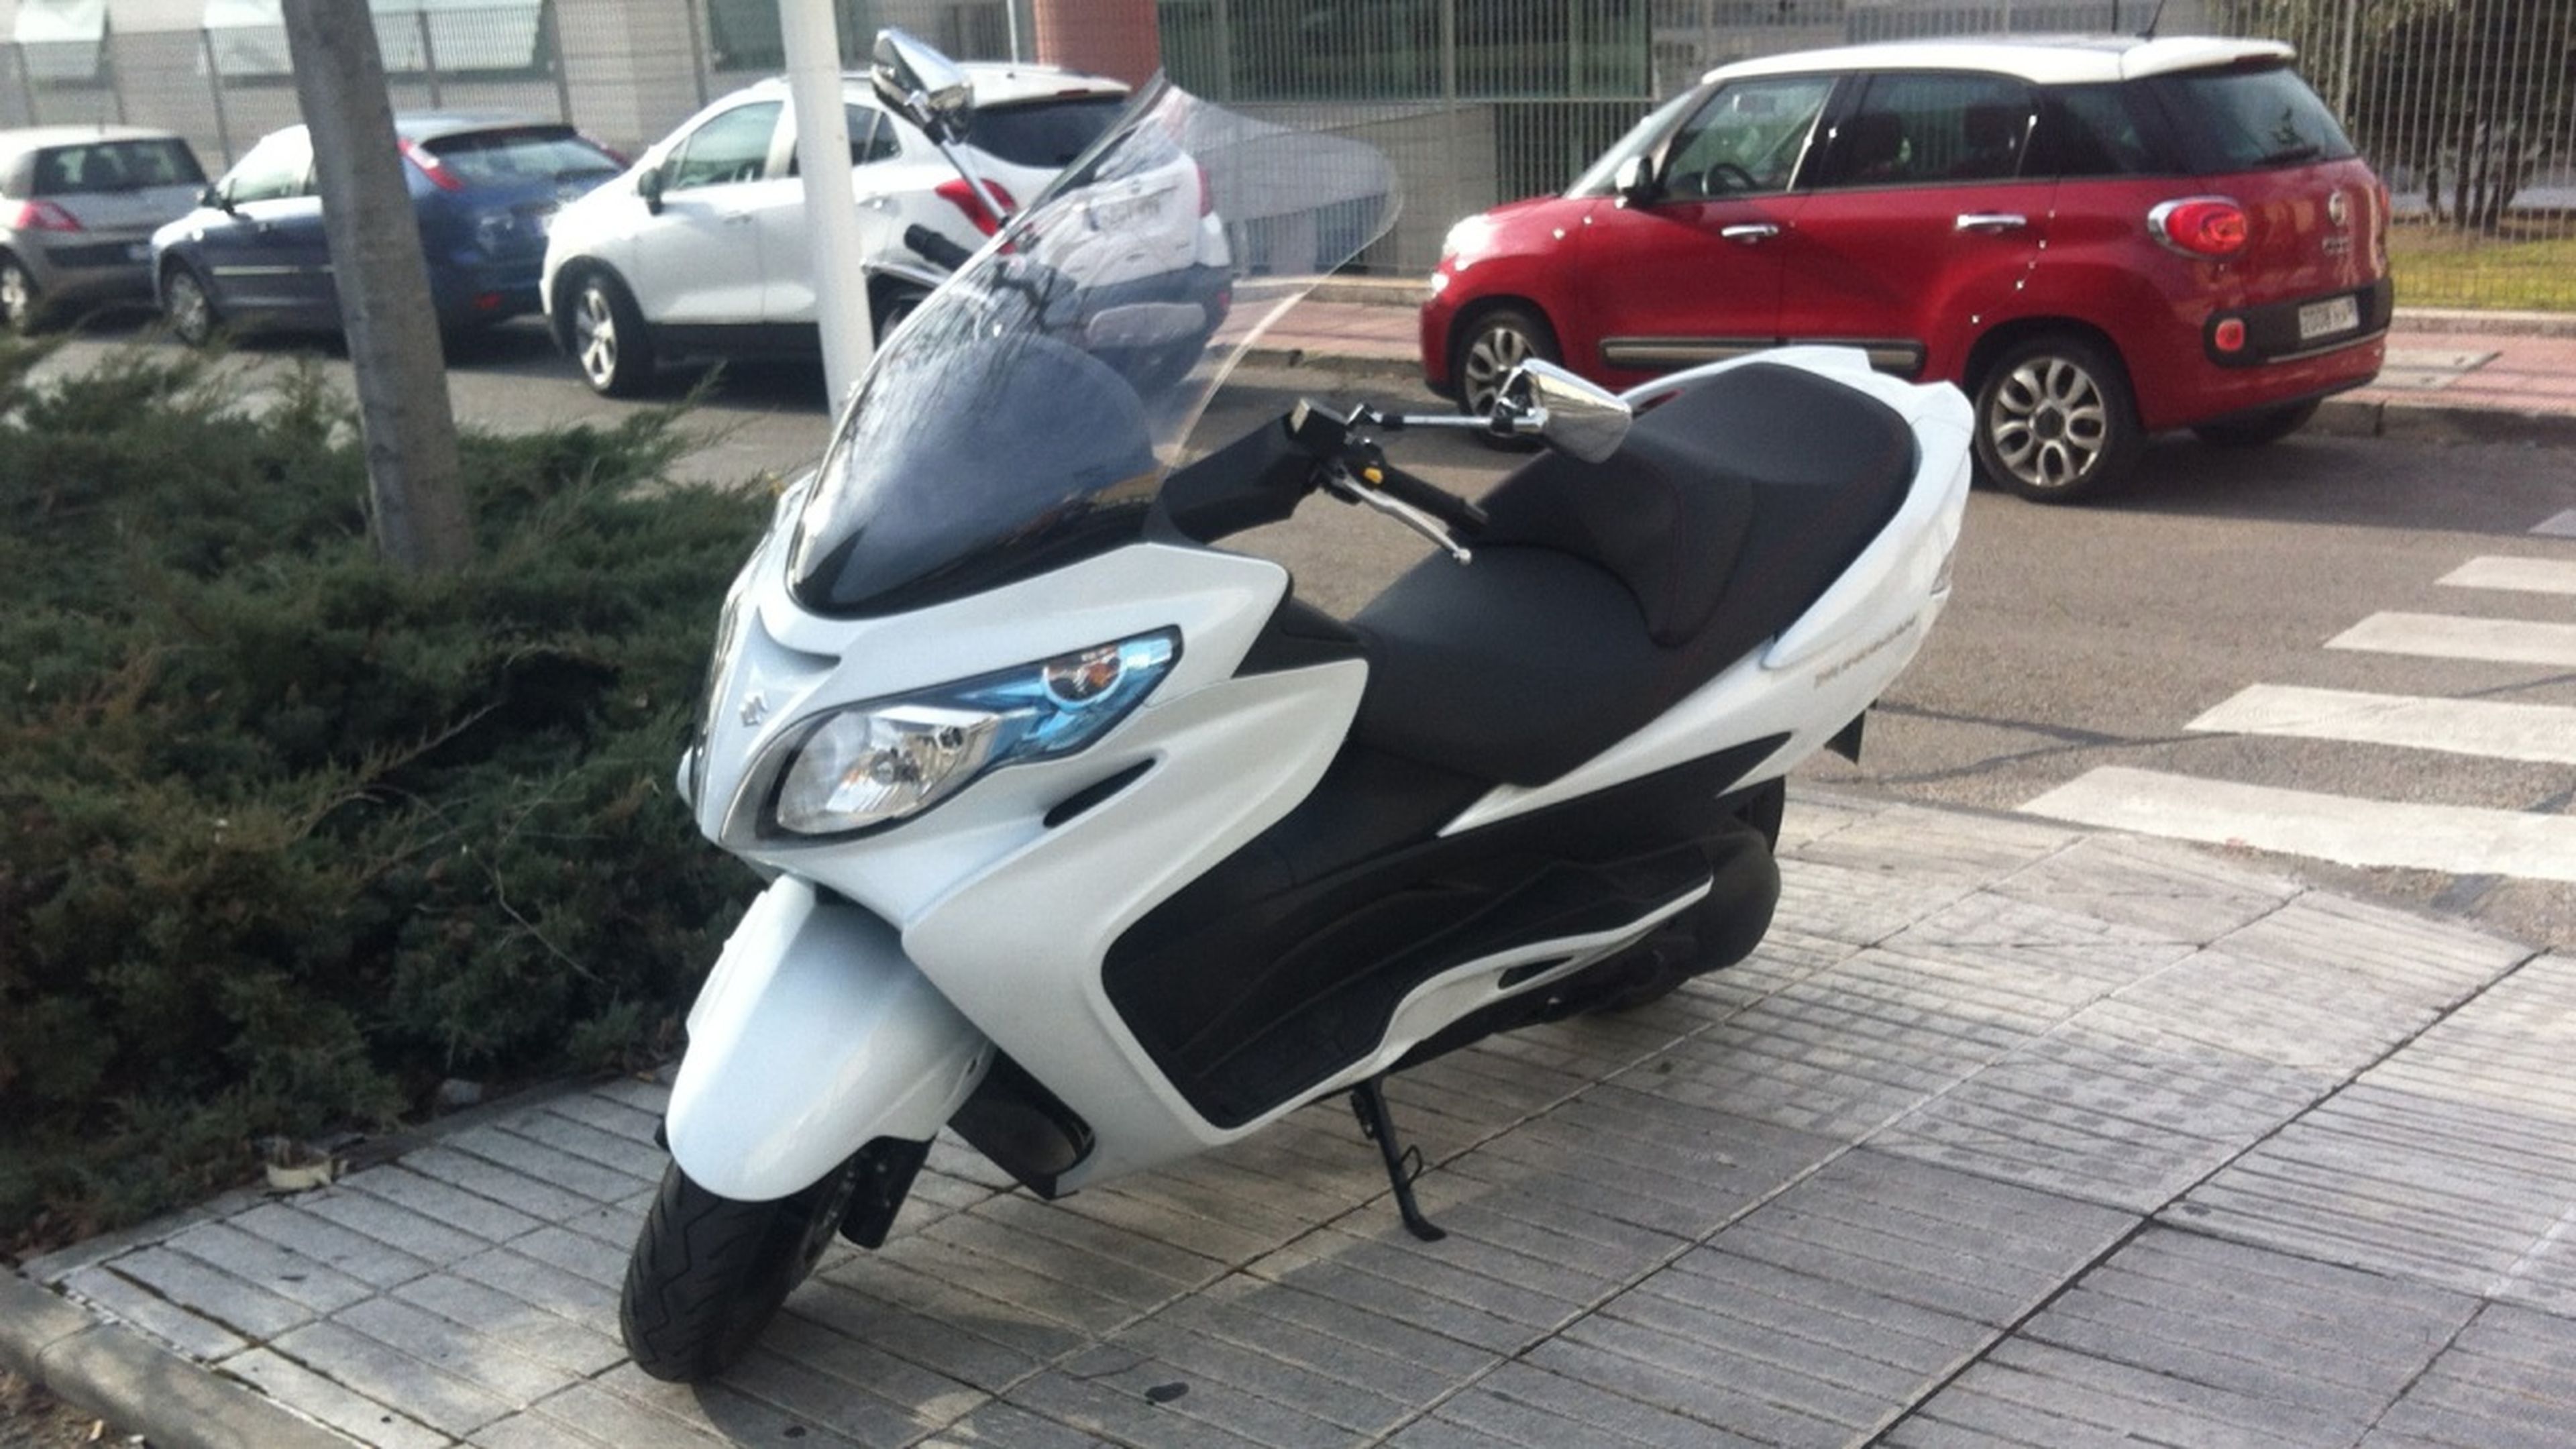 Motos-125-con-marchas-scooter-Suzuki-Burgman-estacionamiento